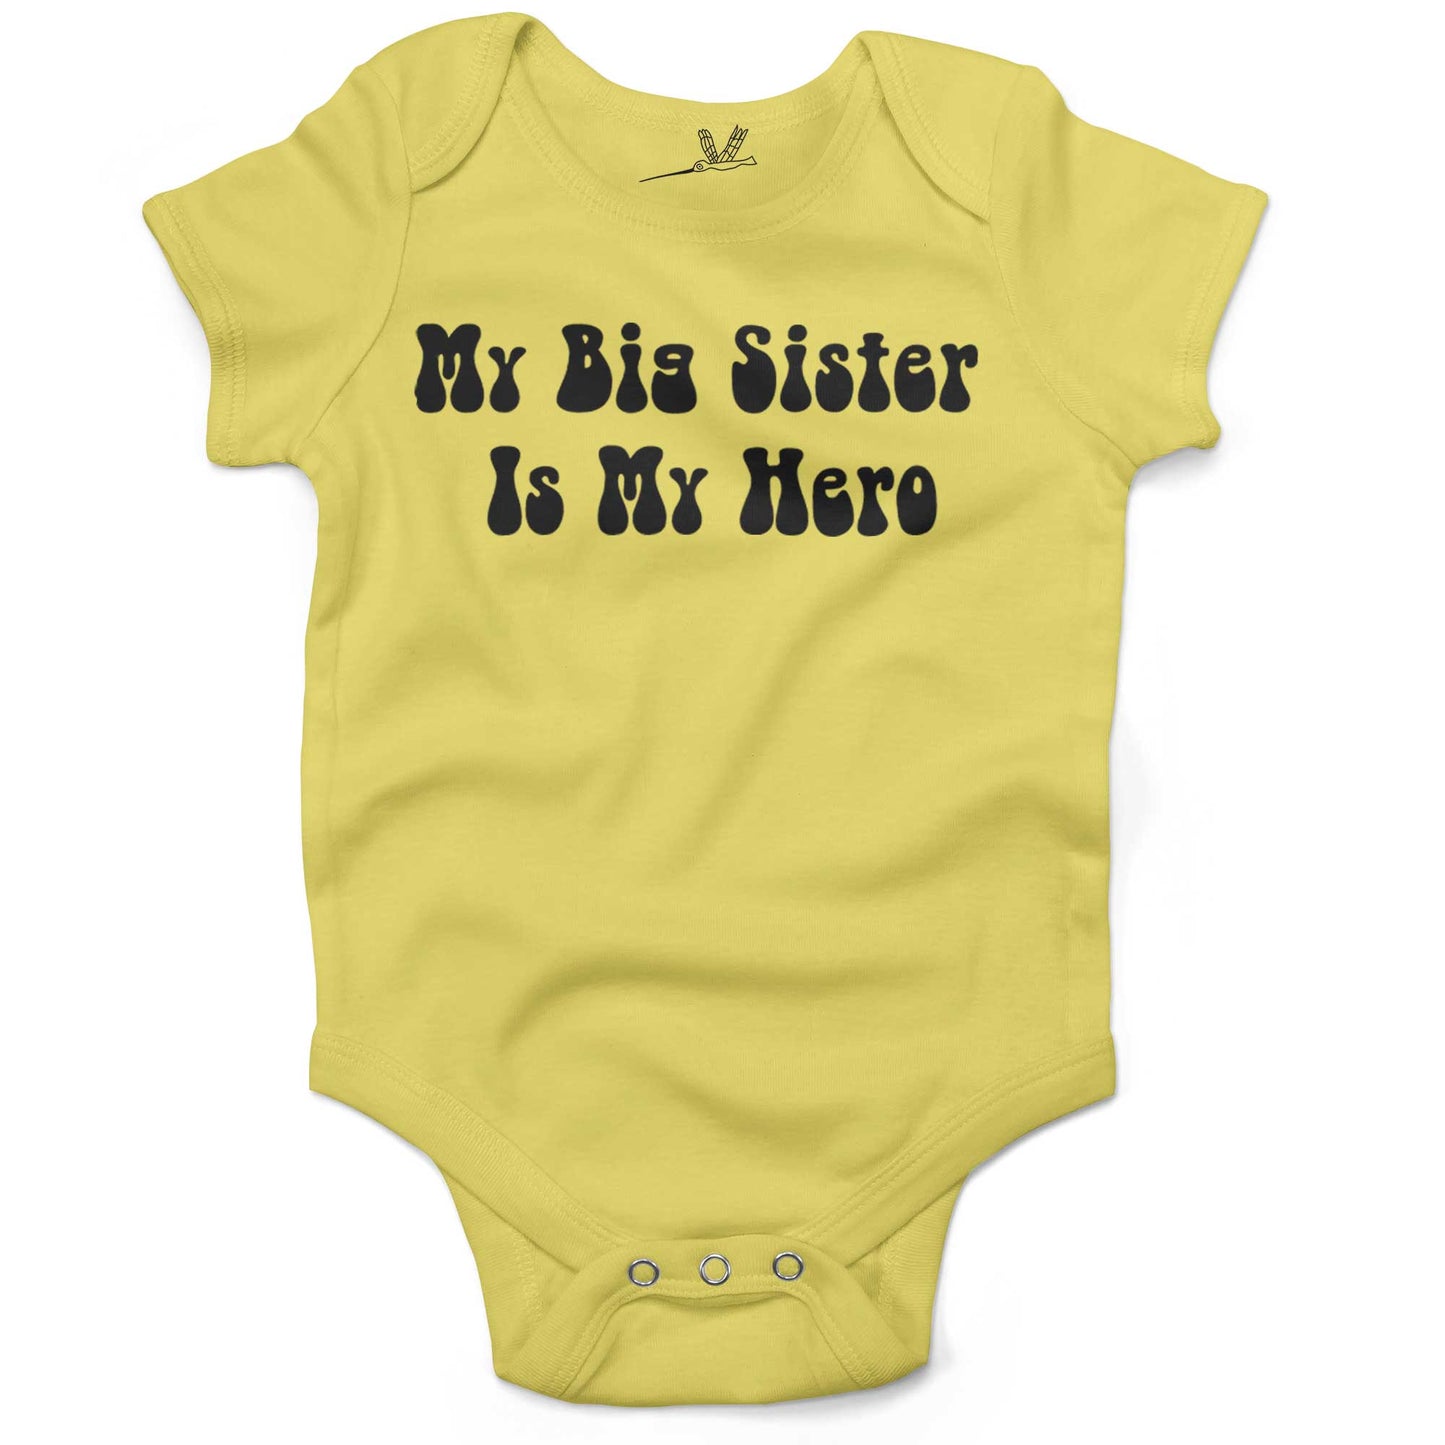 My Big Sister Is My Hero Infant Bodysuit or Raglan Tee-Yellow-3-6 months